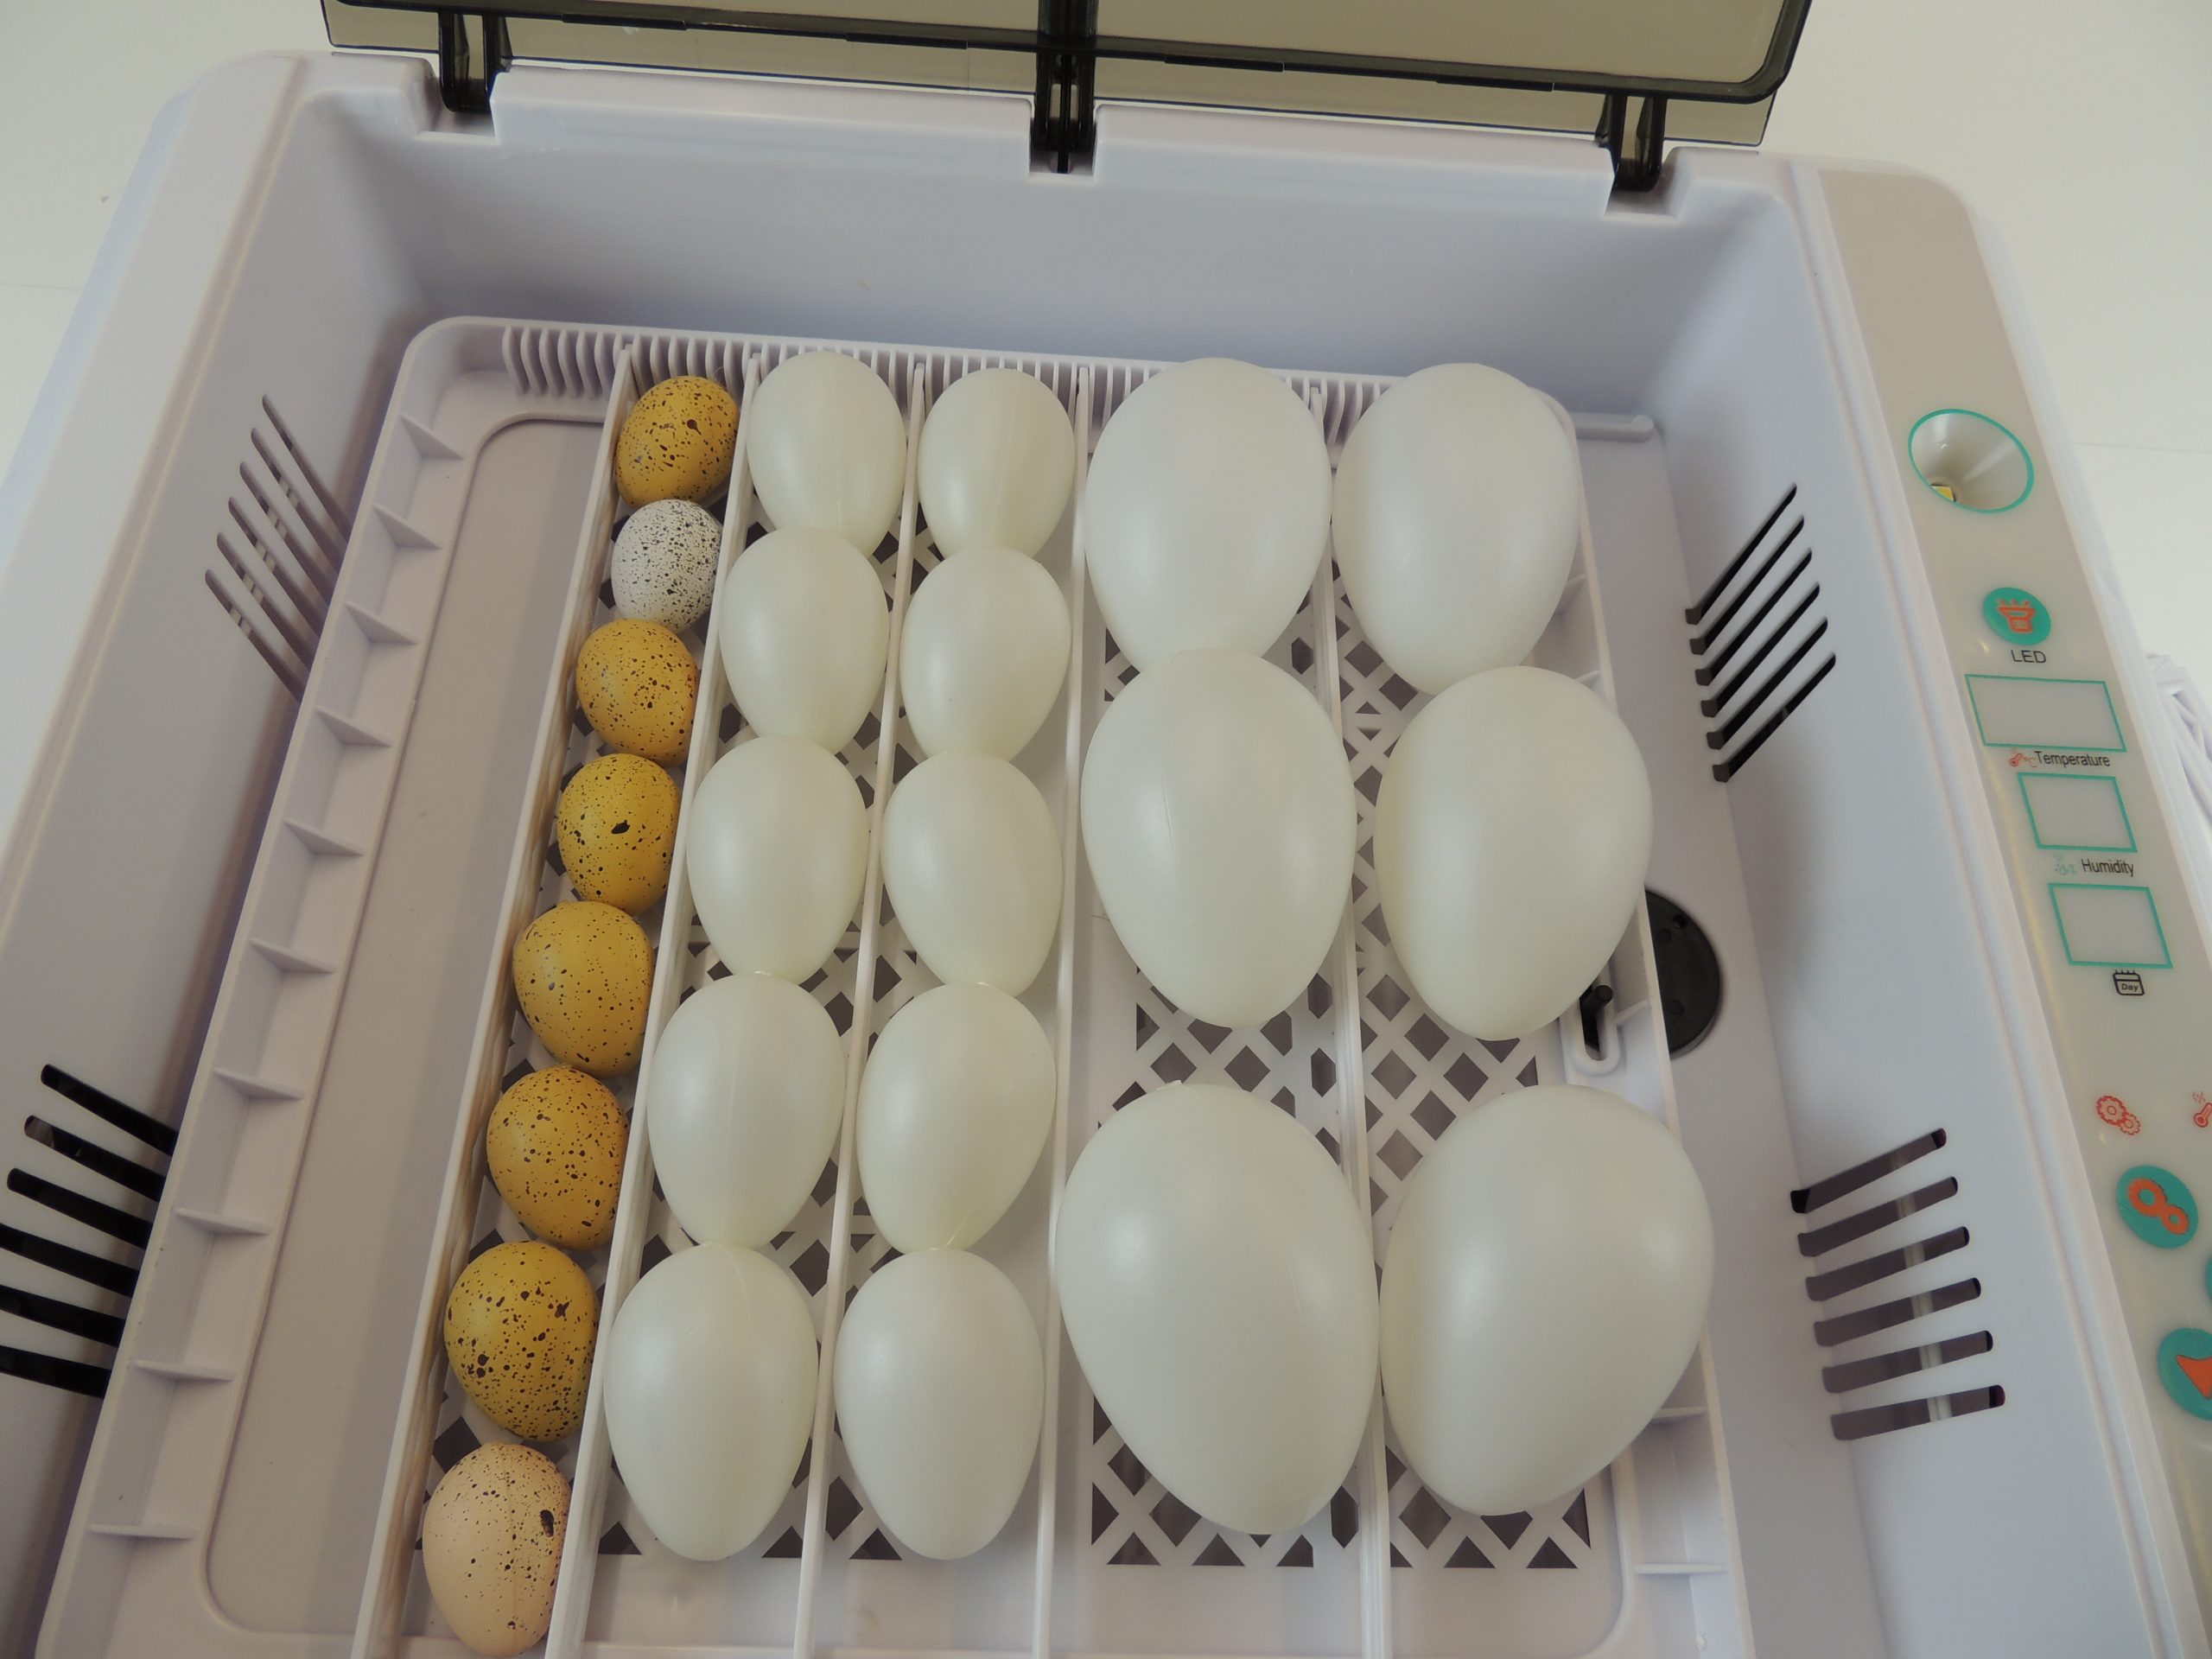 farm & ranch 12 Eier Inkubator Automatisch mit Effizienter LED Beleuchtung,Inkubator Brutkasten Motorbrüter Brutmaschine Hühne